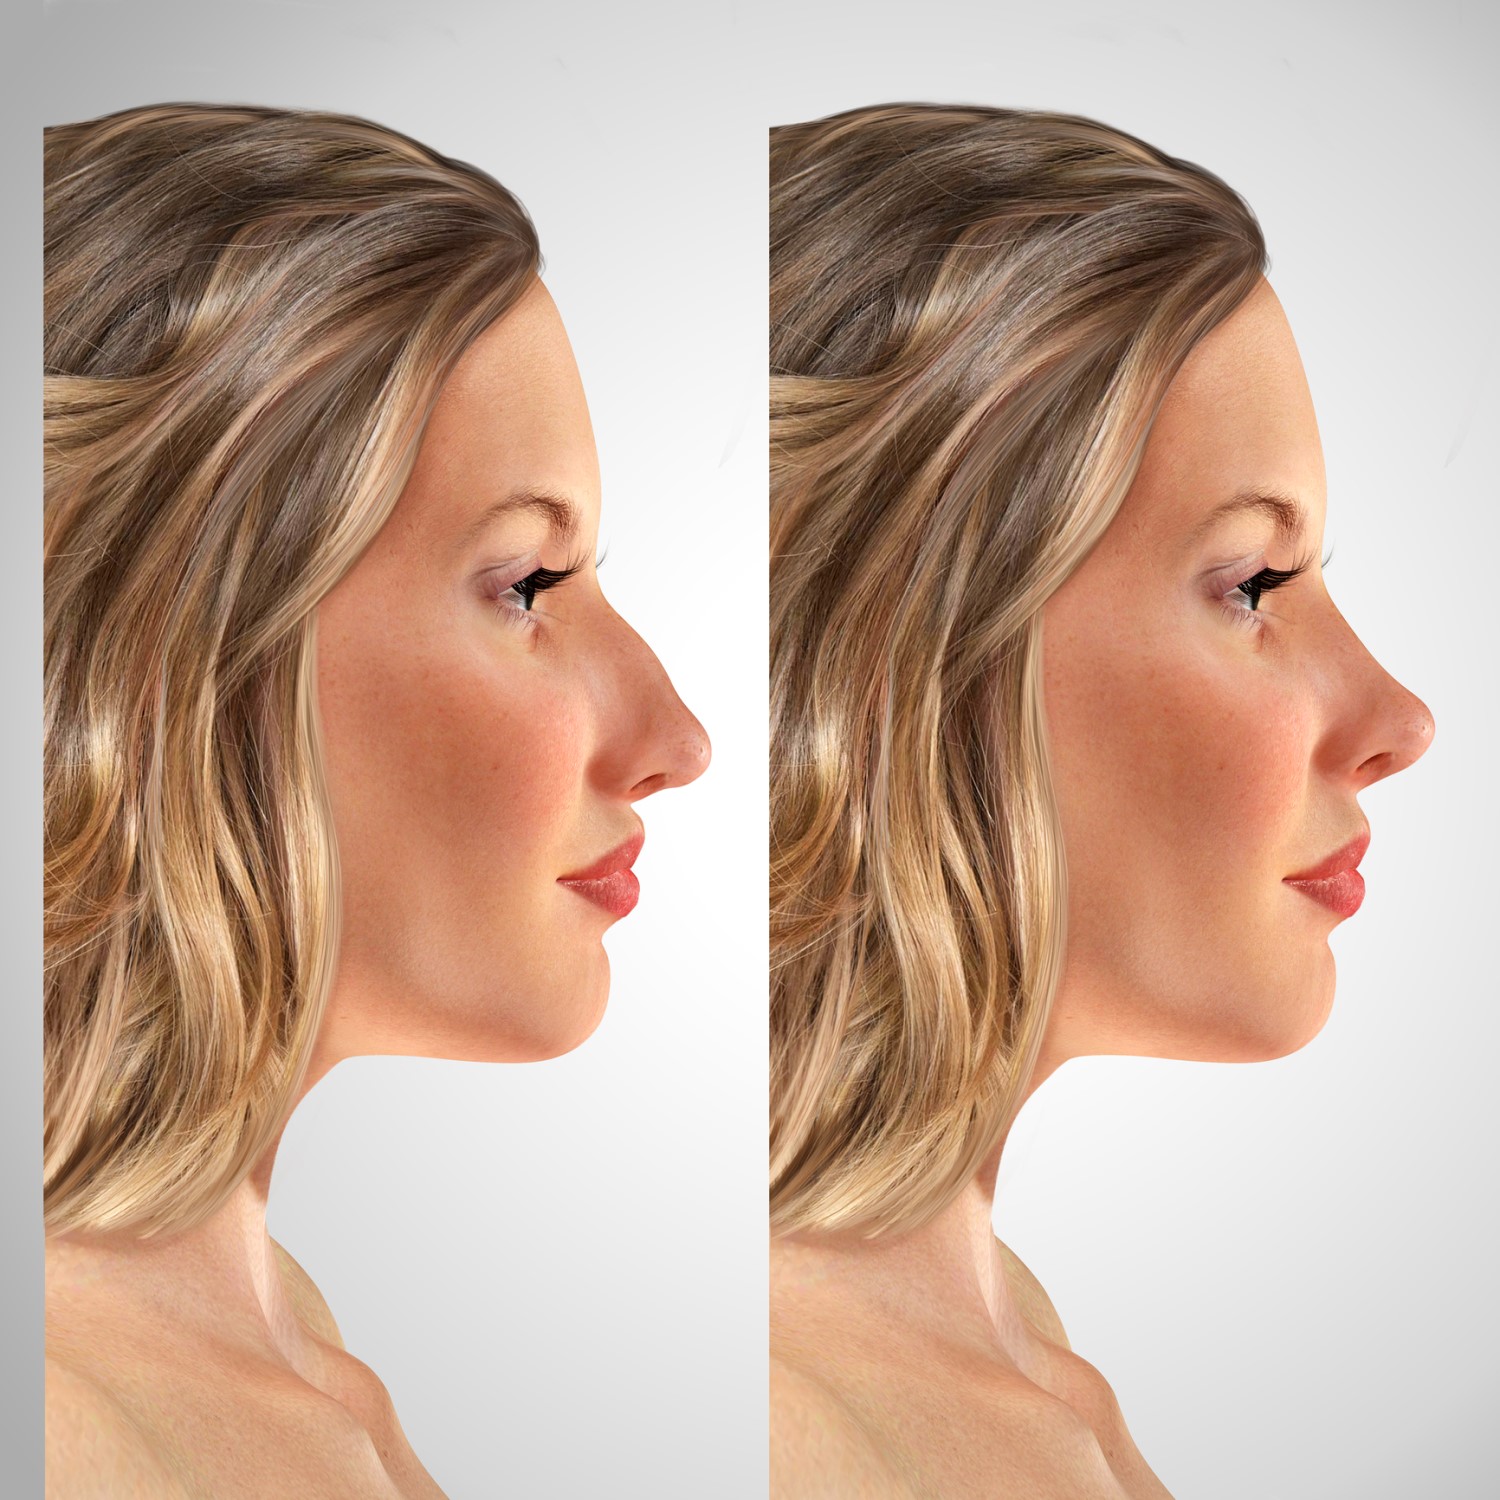 Моделирование носа перед ринопластикой